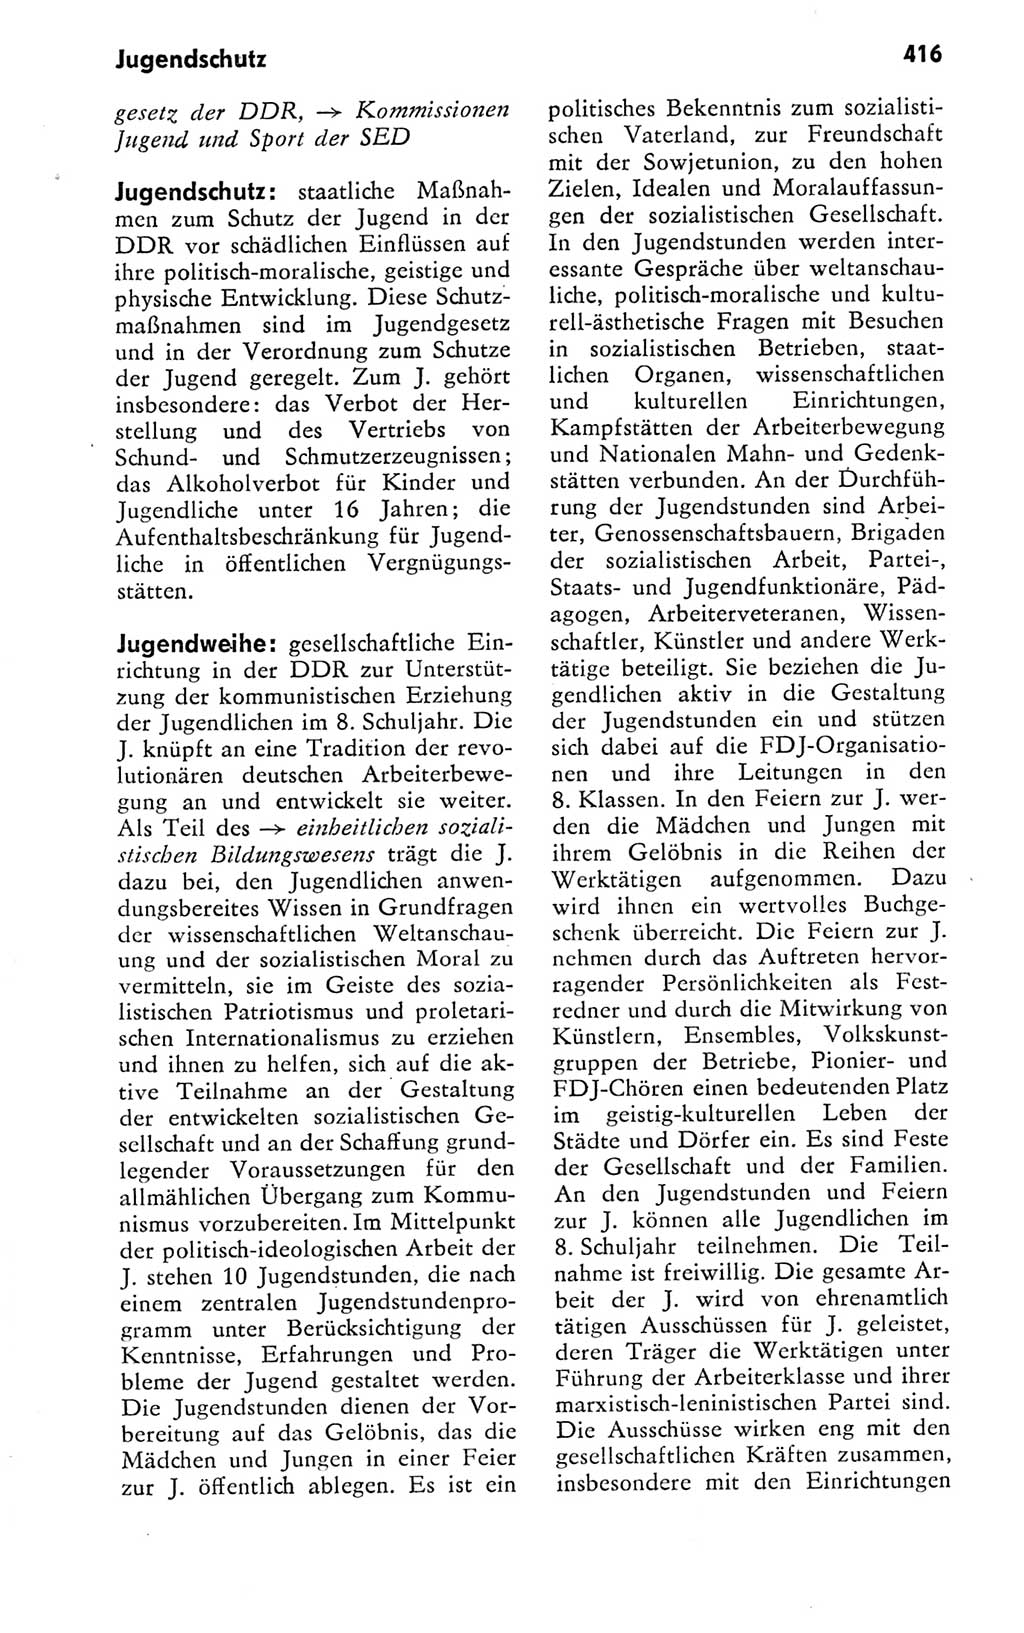 Kleines politisches Wörterbuch [Deutsche Demokratische Republik (DDR)] 1978, Seite 416 (Kl. pol. Wb. DDR 1978, S. 416)